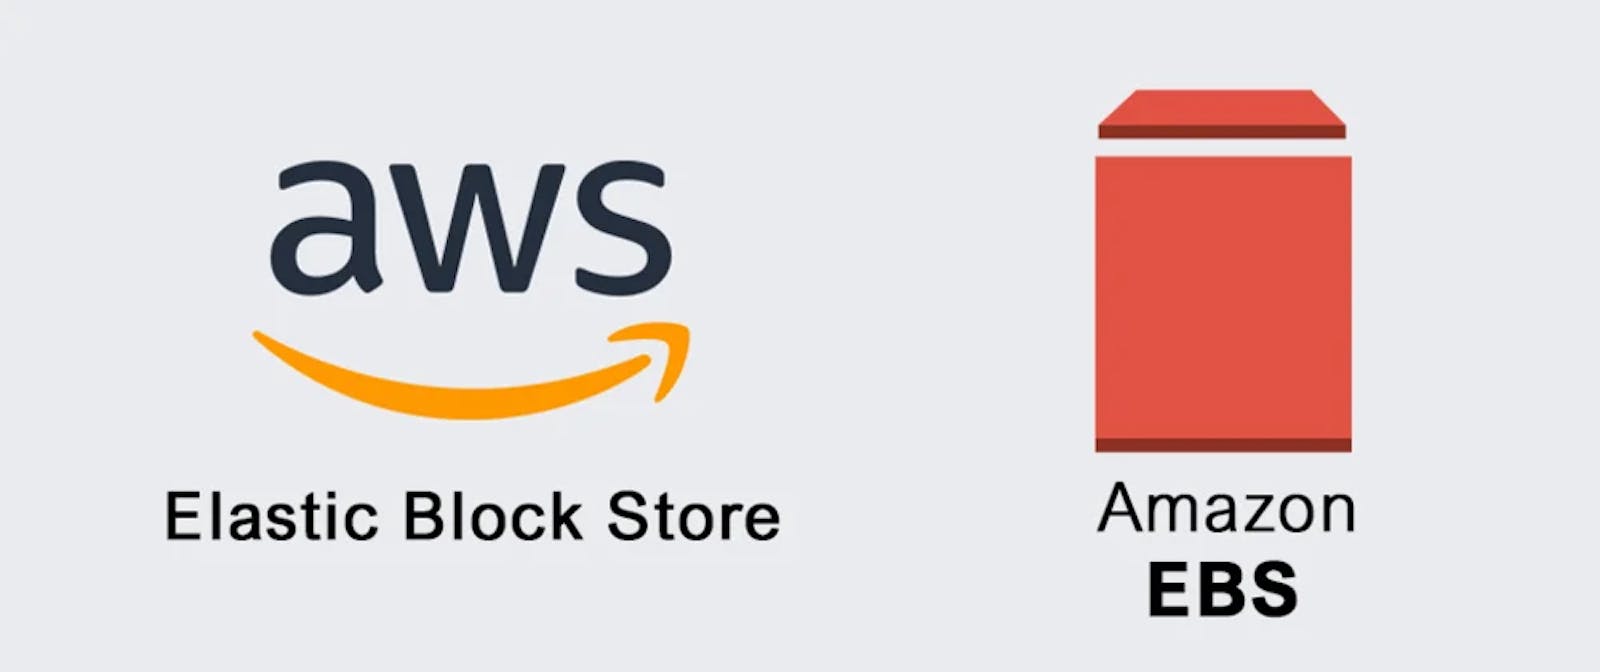 Working with Amazon Elastic Block Store (Amazon EBS)